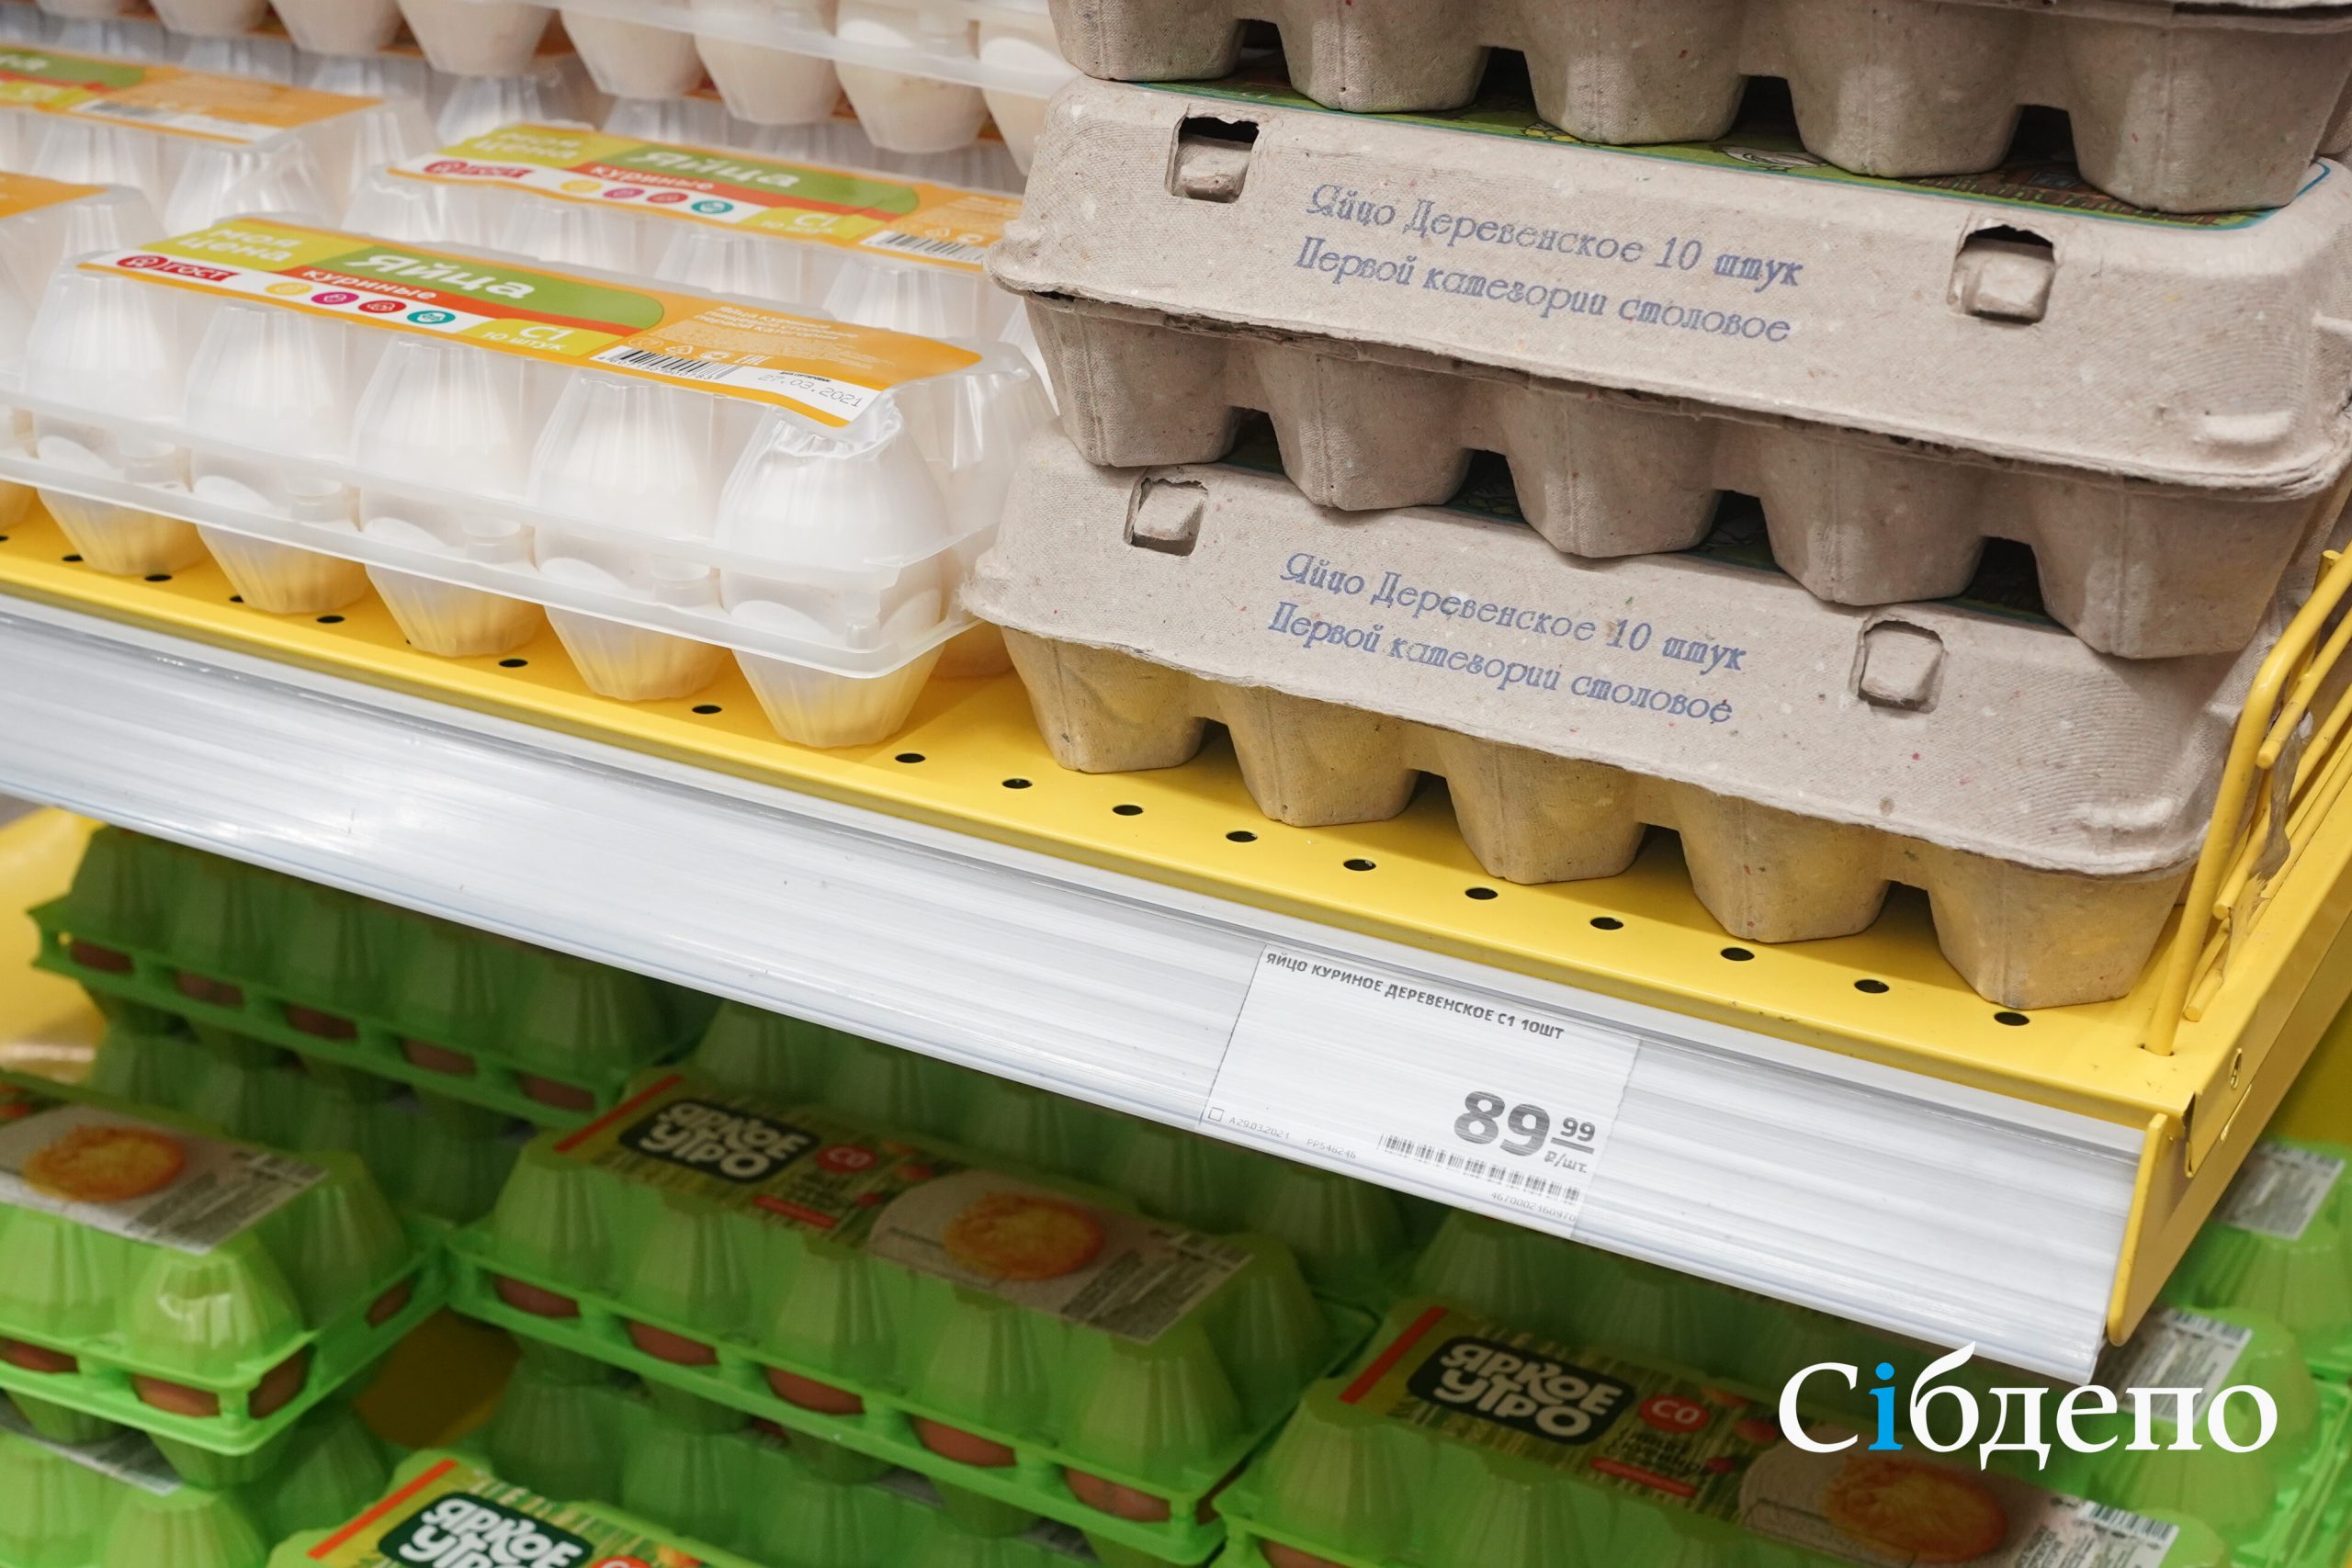 «Яйца 133 руб., молоко 104 р., морковь 107 р.»: запредельный рост цен заметили покупатели в магазинах Кемерова